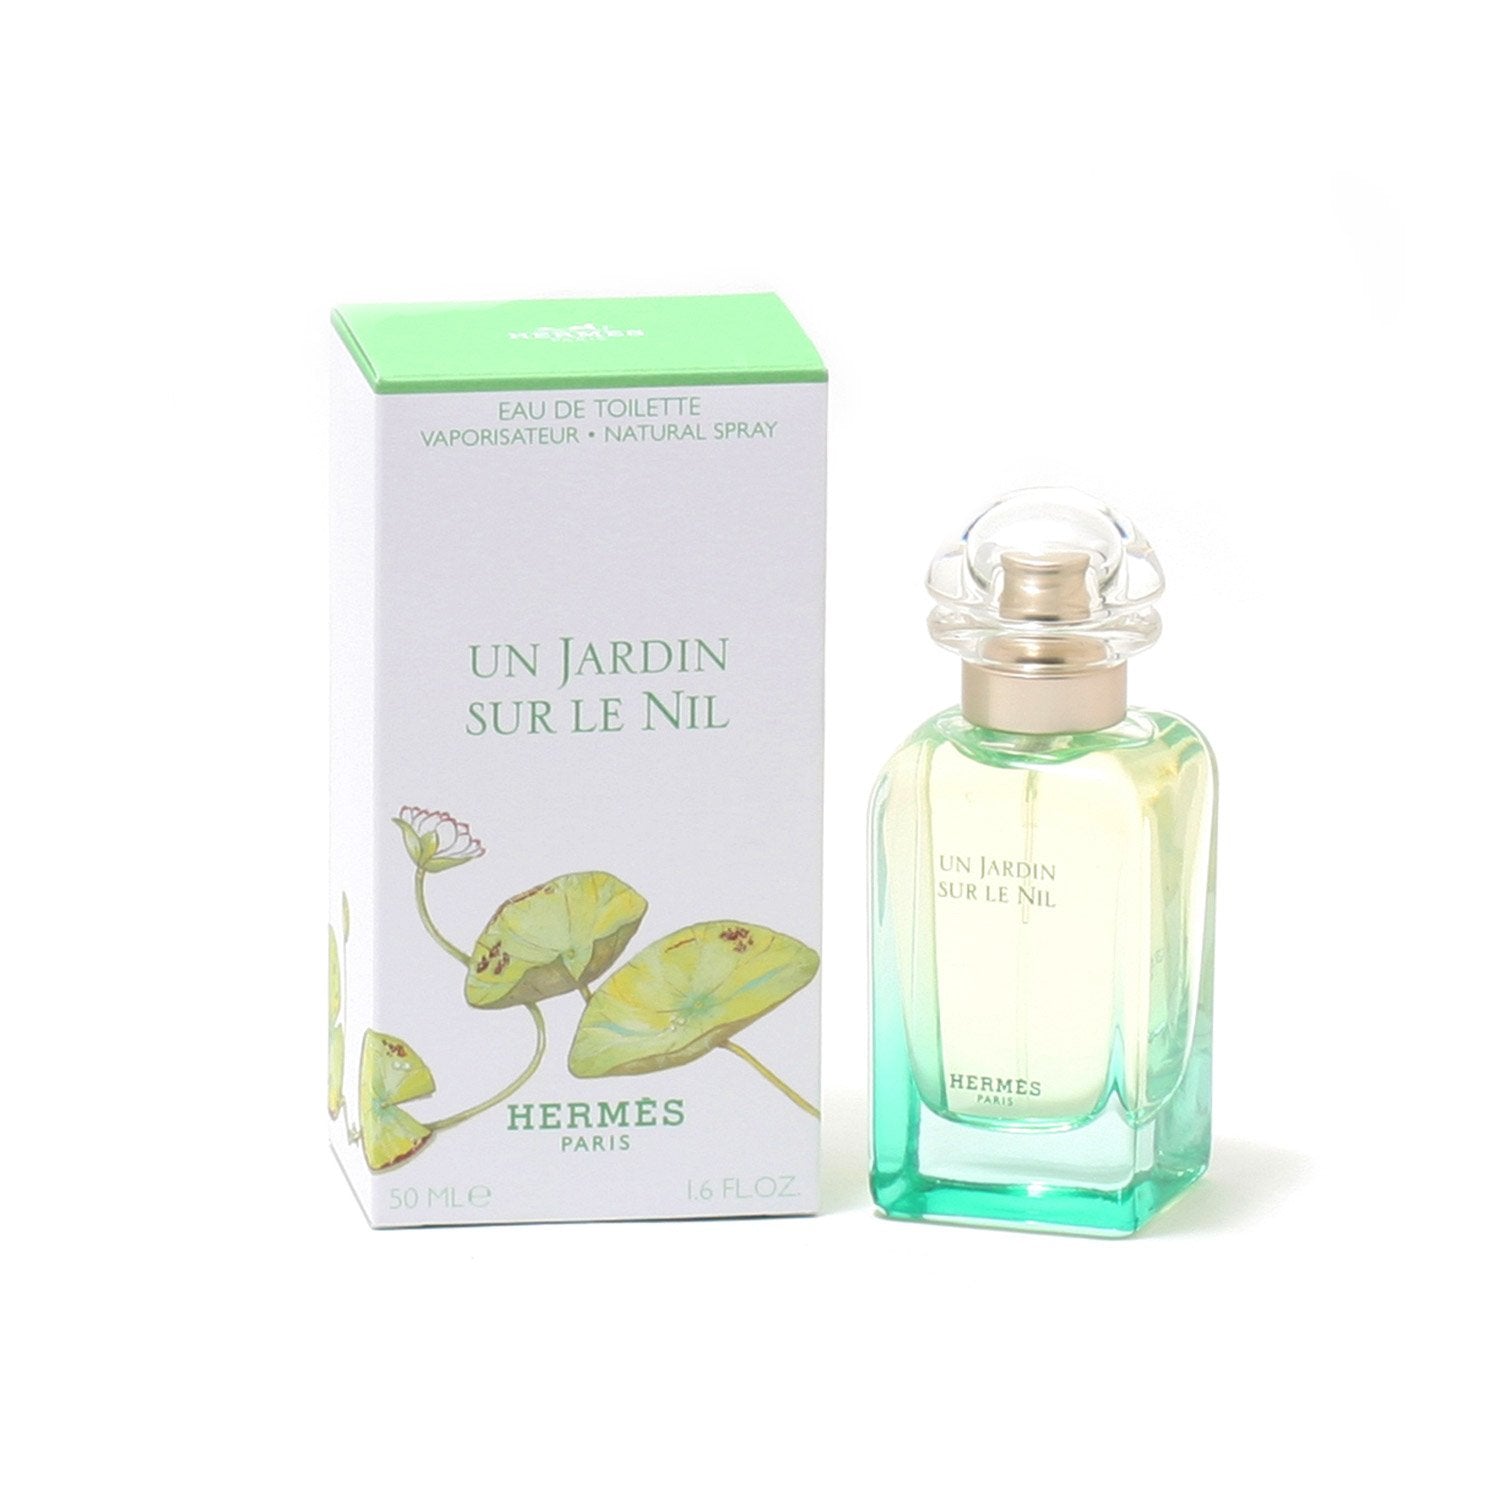 Perfume - HERMES UN JARDIN SUR LE NIL FOR WOMEN - EAU DE TOILETTE SPRAY